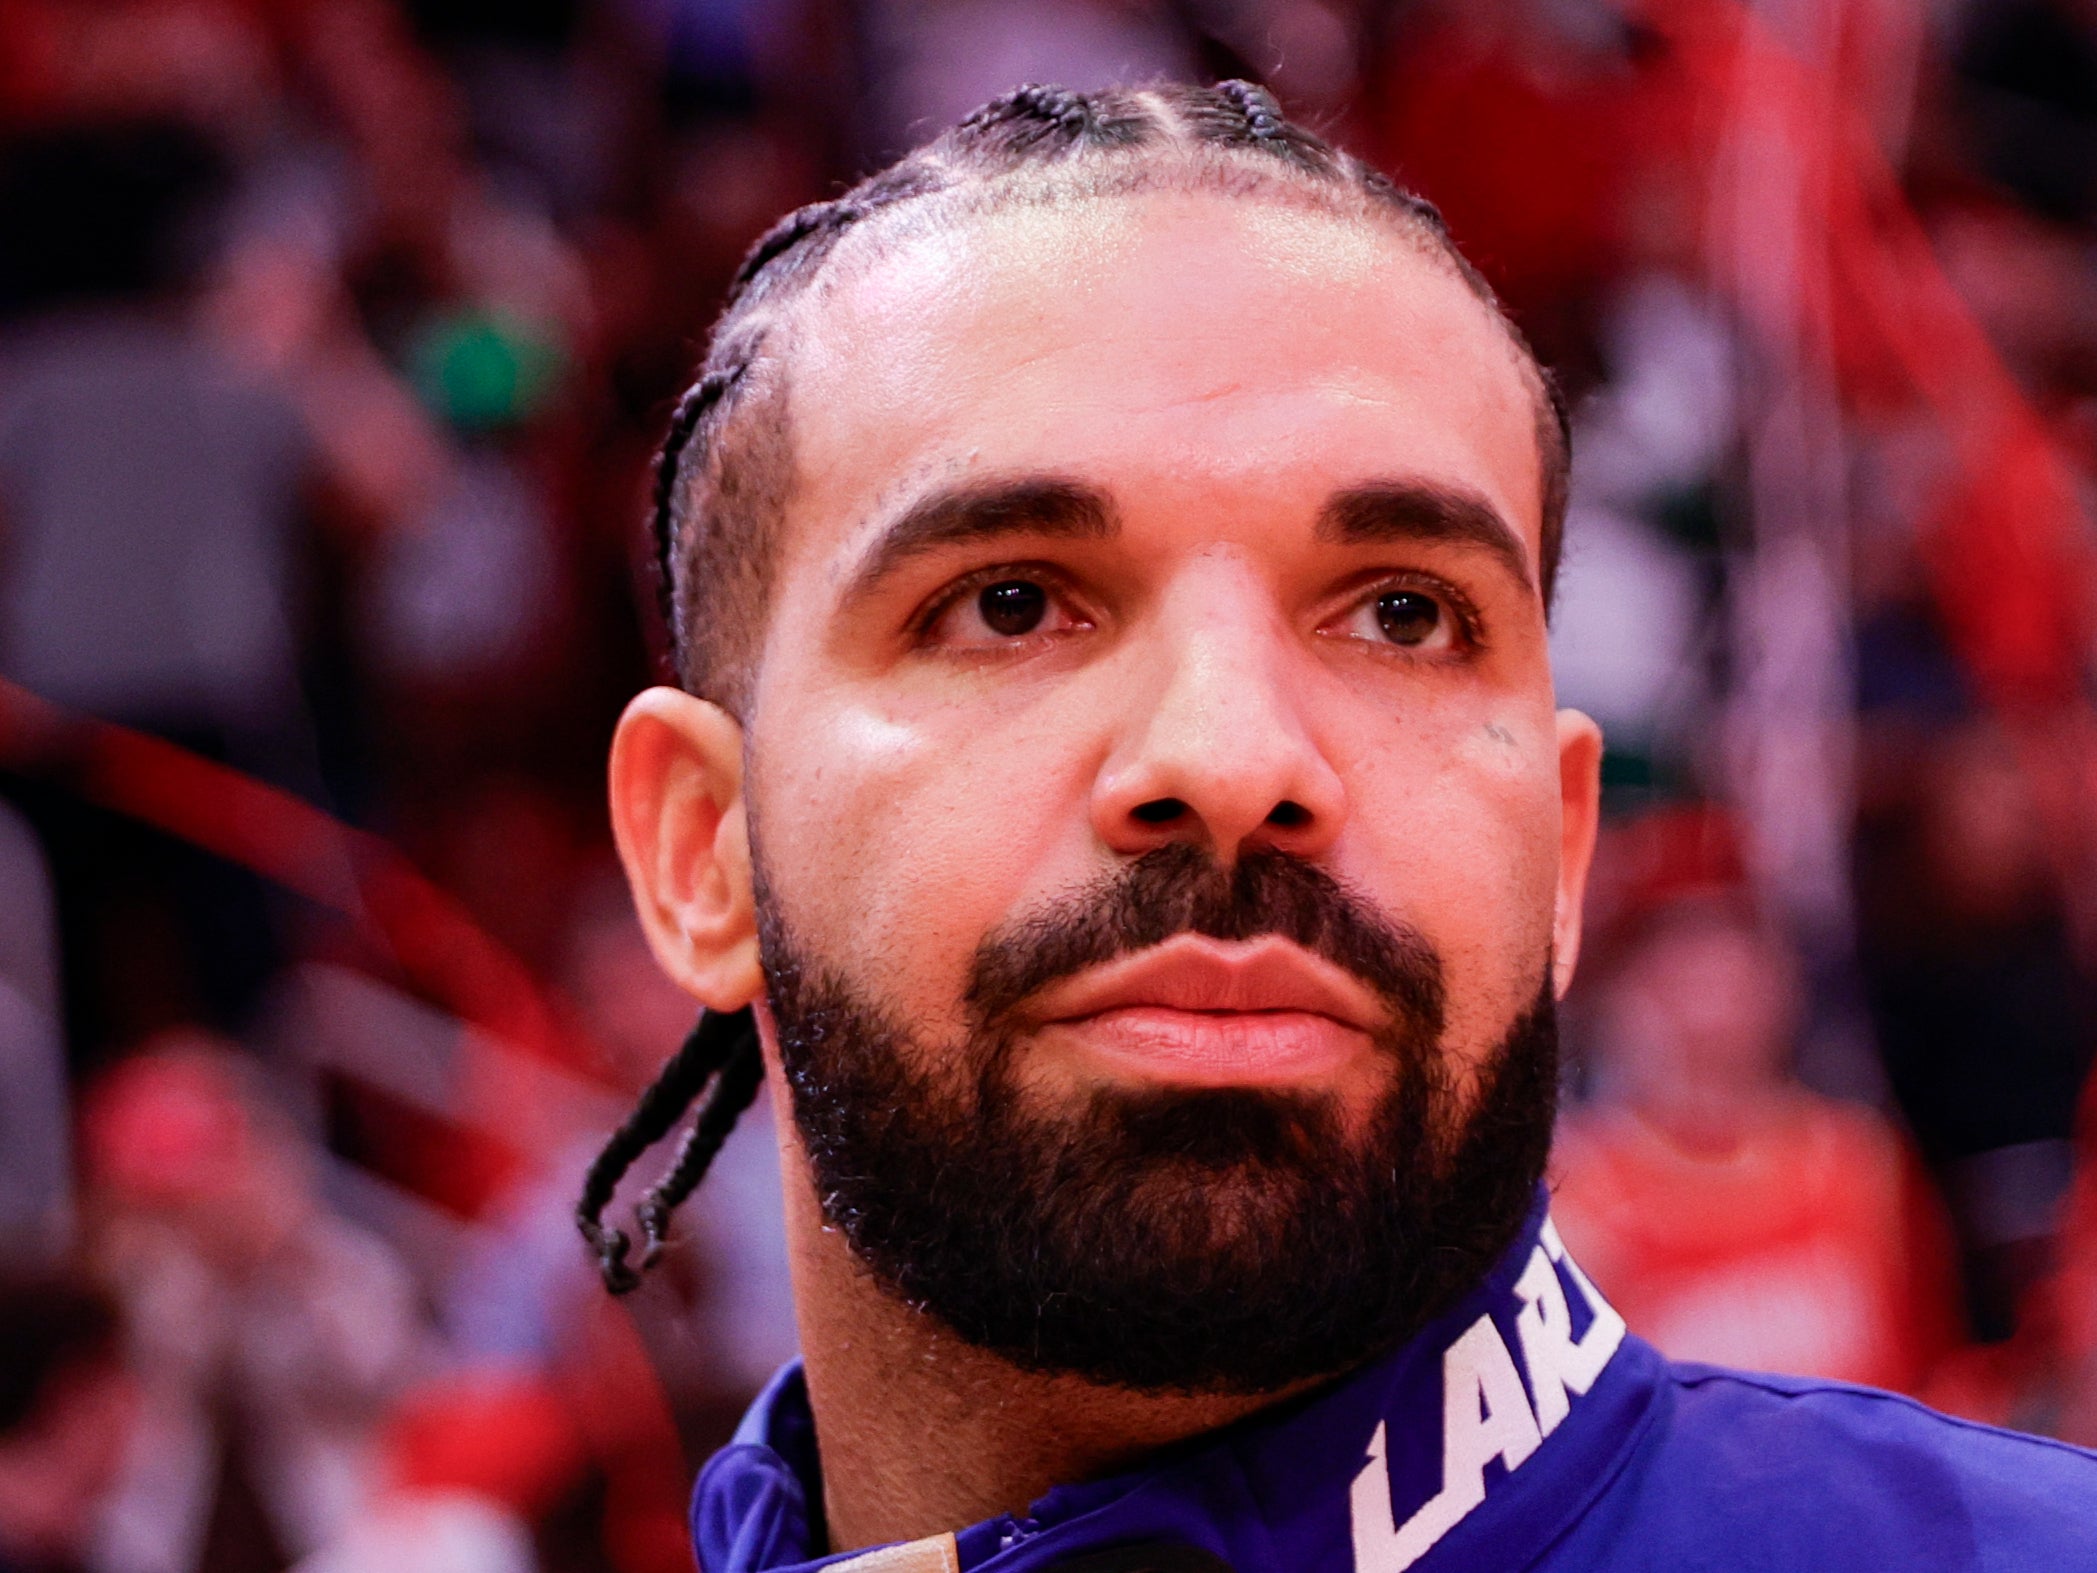 Drake fans poke fun at the rapper’s recent fashion choise